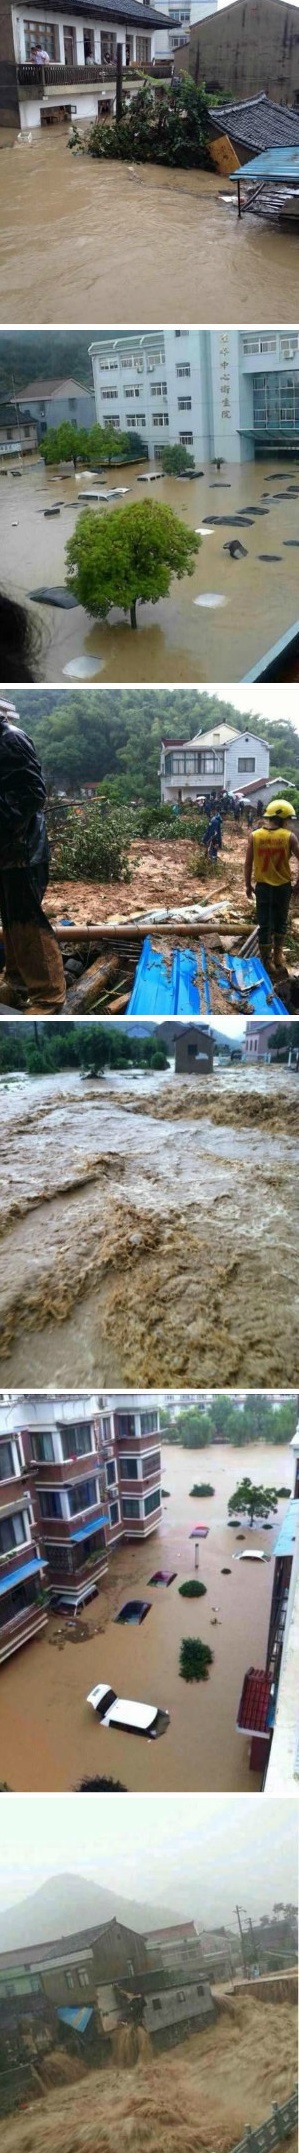 宁波积水 台风过后宁波城区积水严重余姚告急